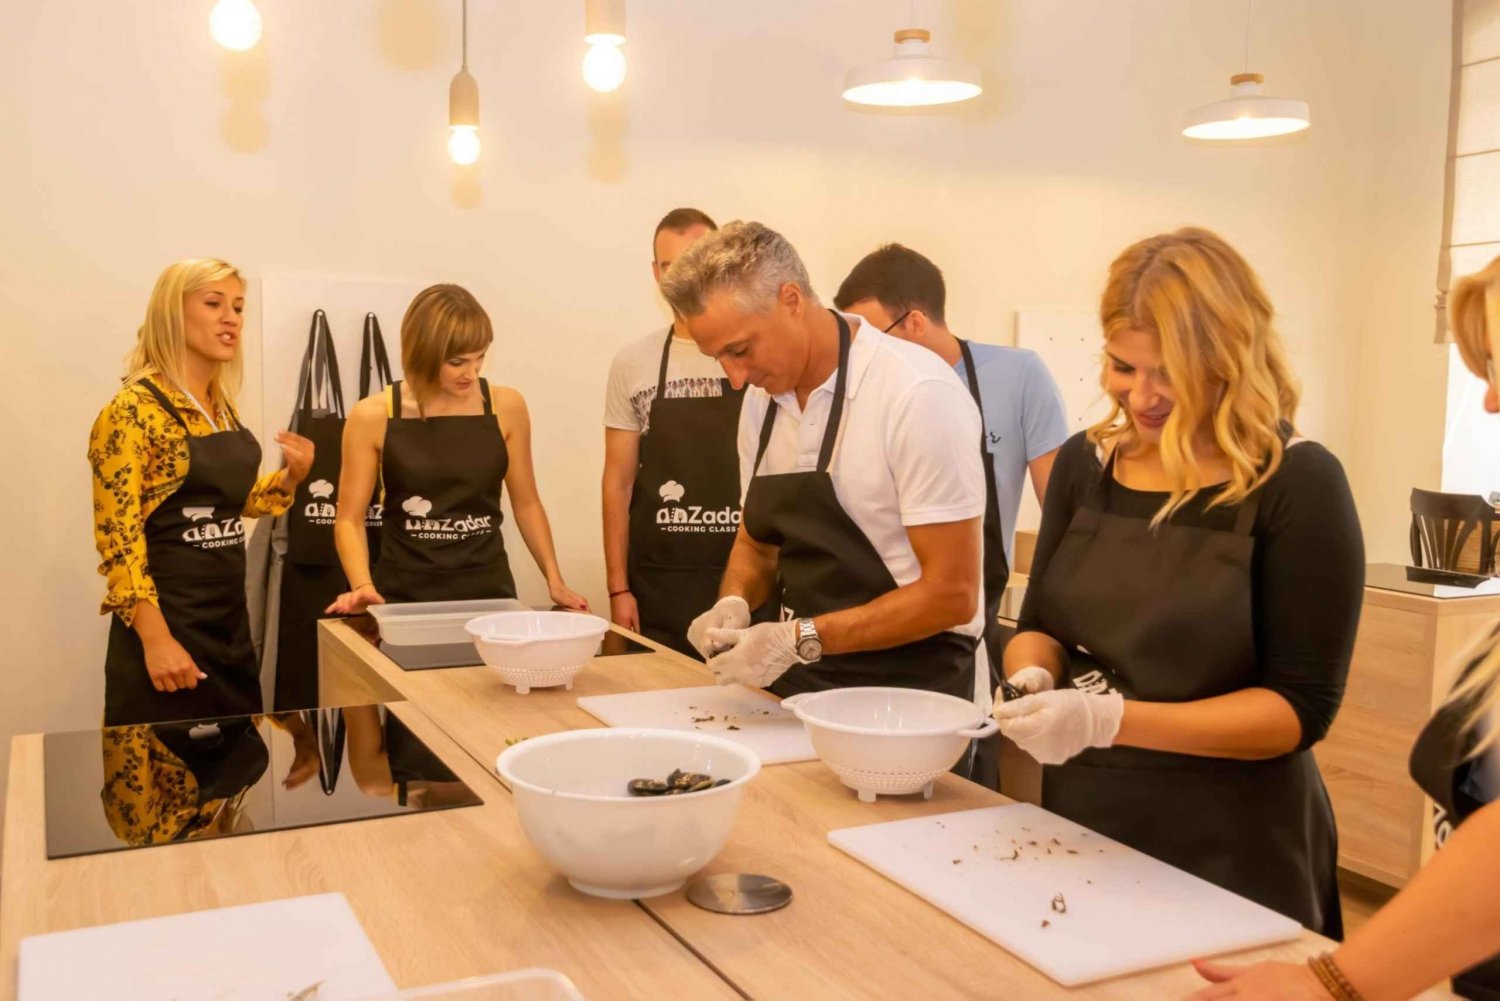 Zadar: Lekcja gotowania w małej grupie